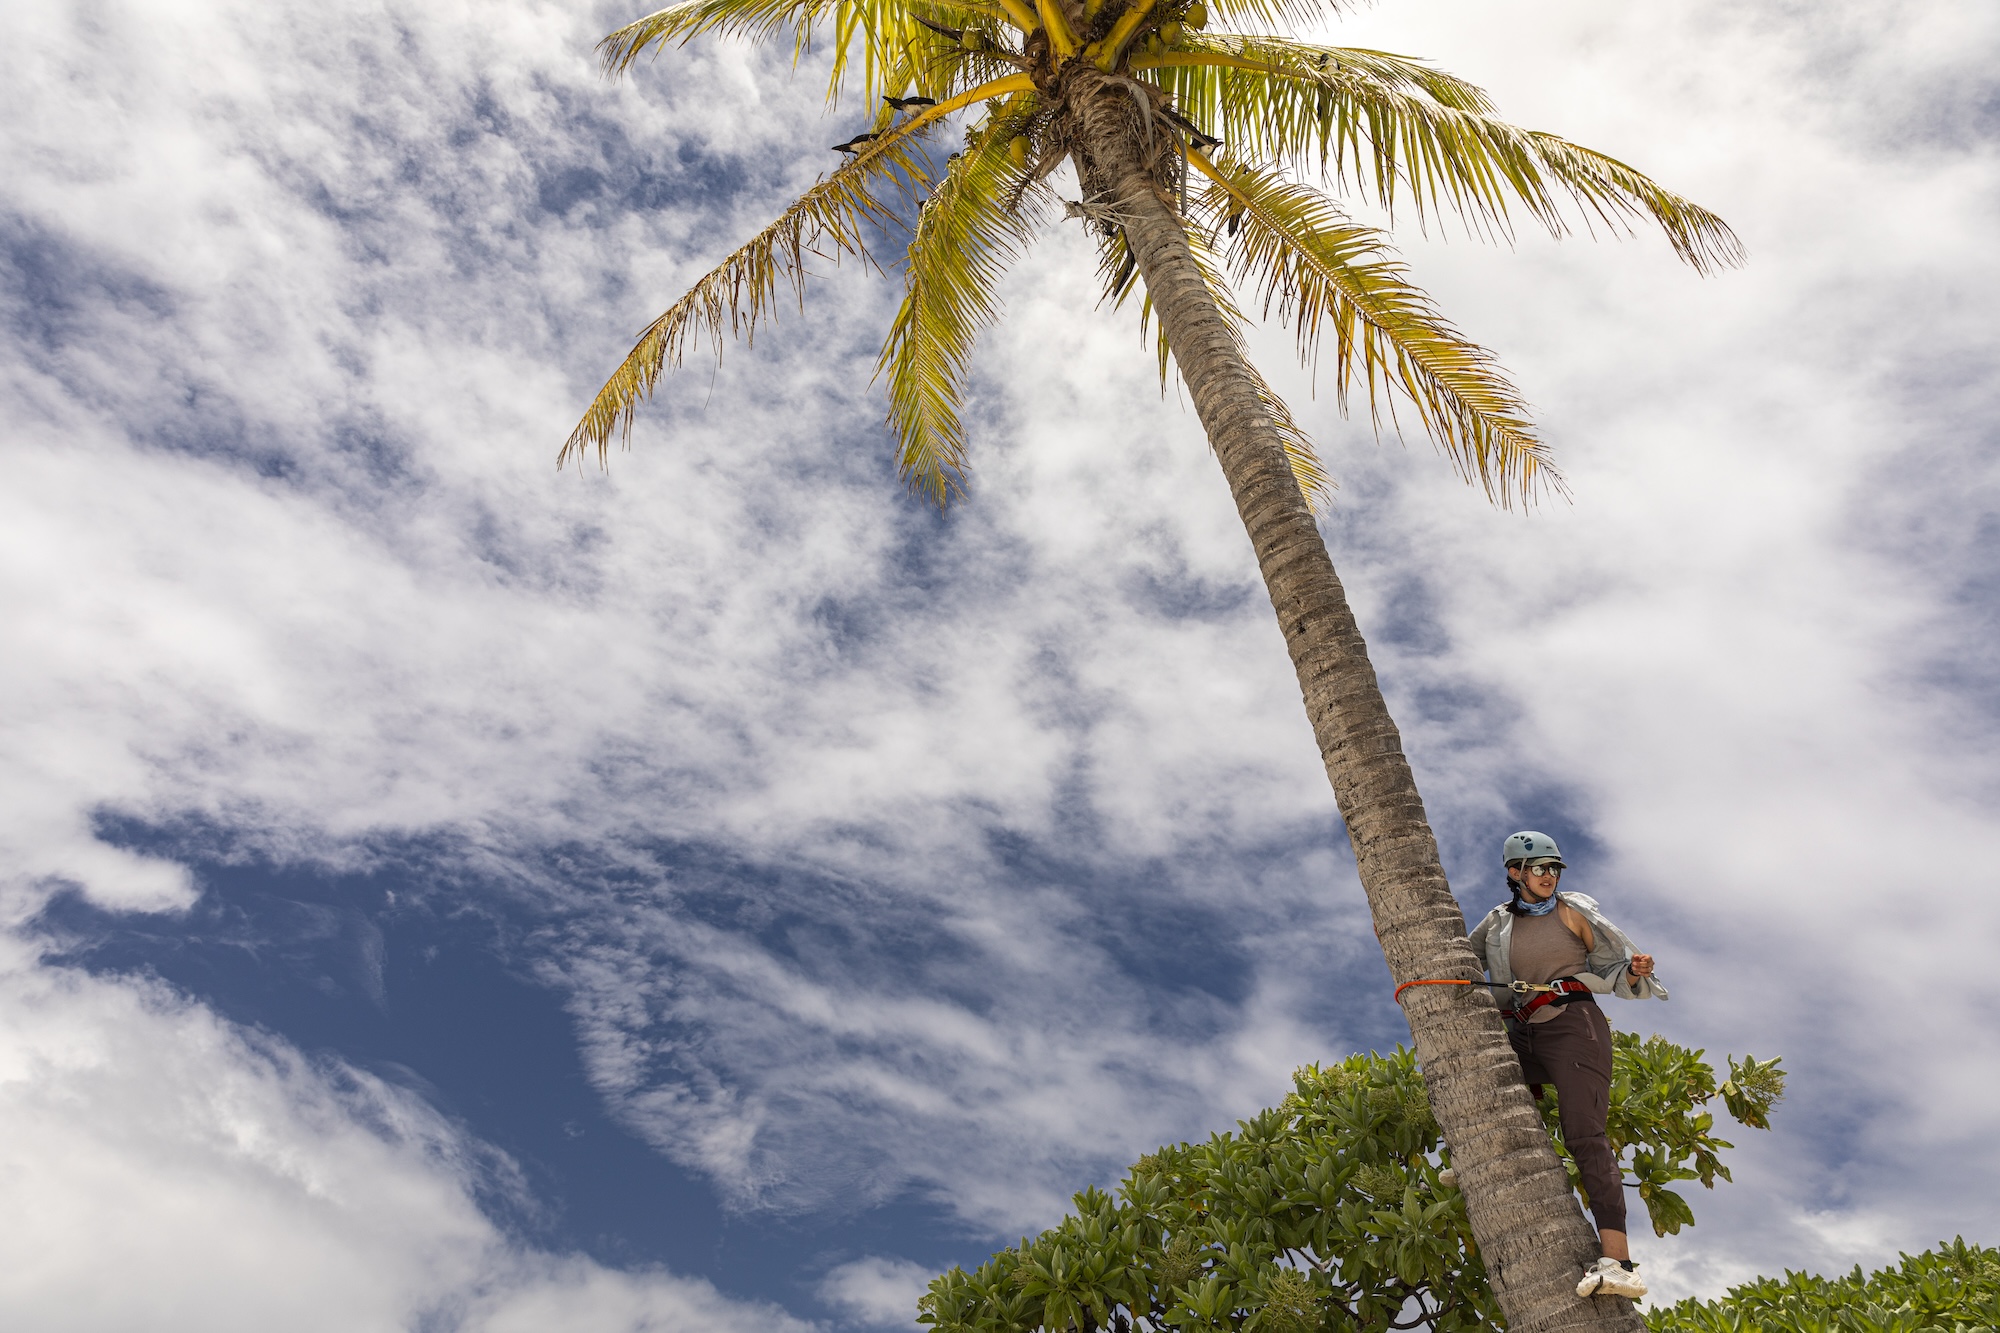 A person climbs a palm tree